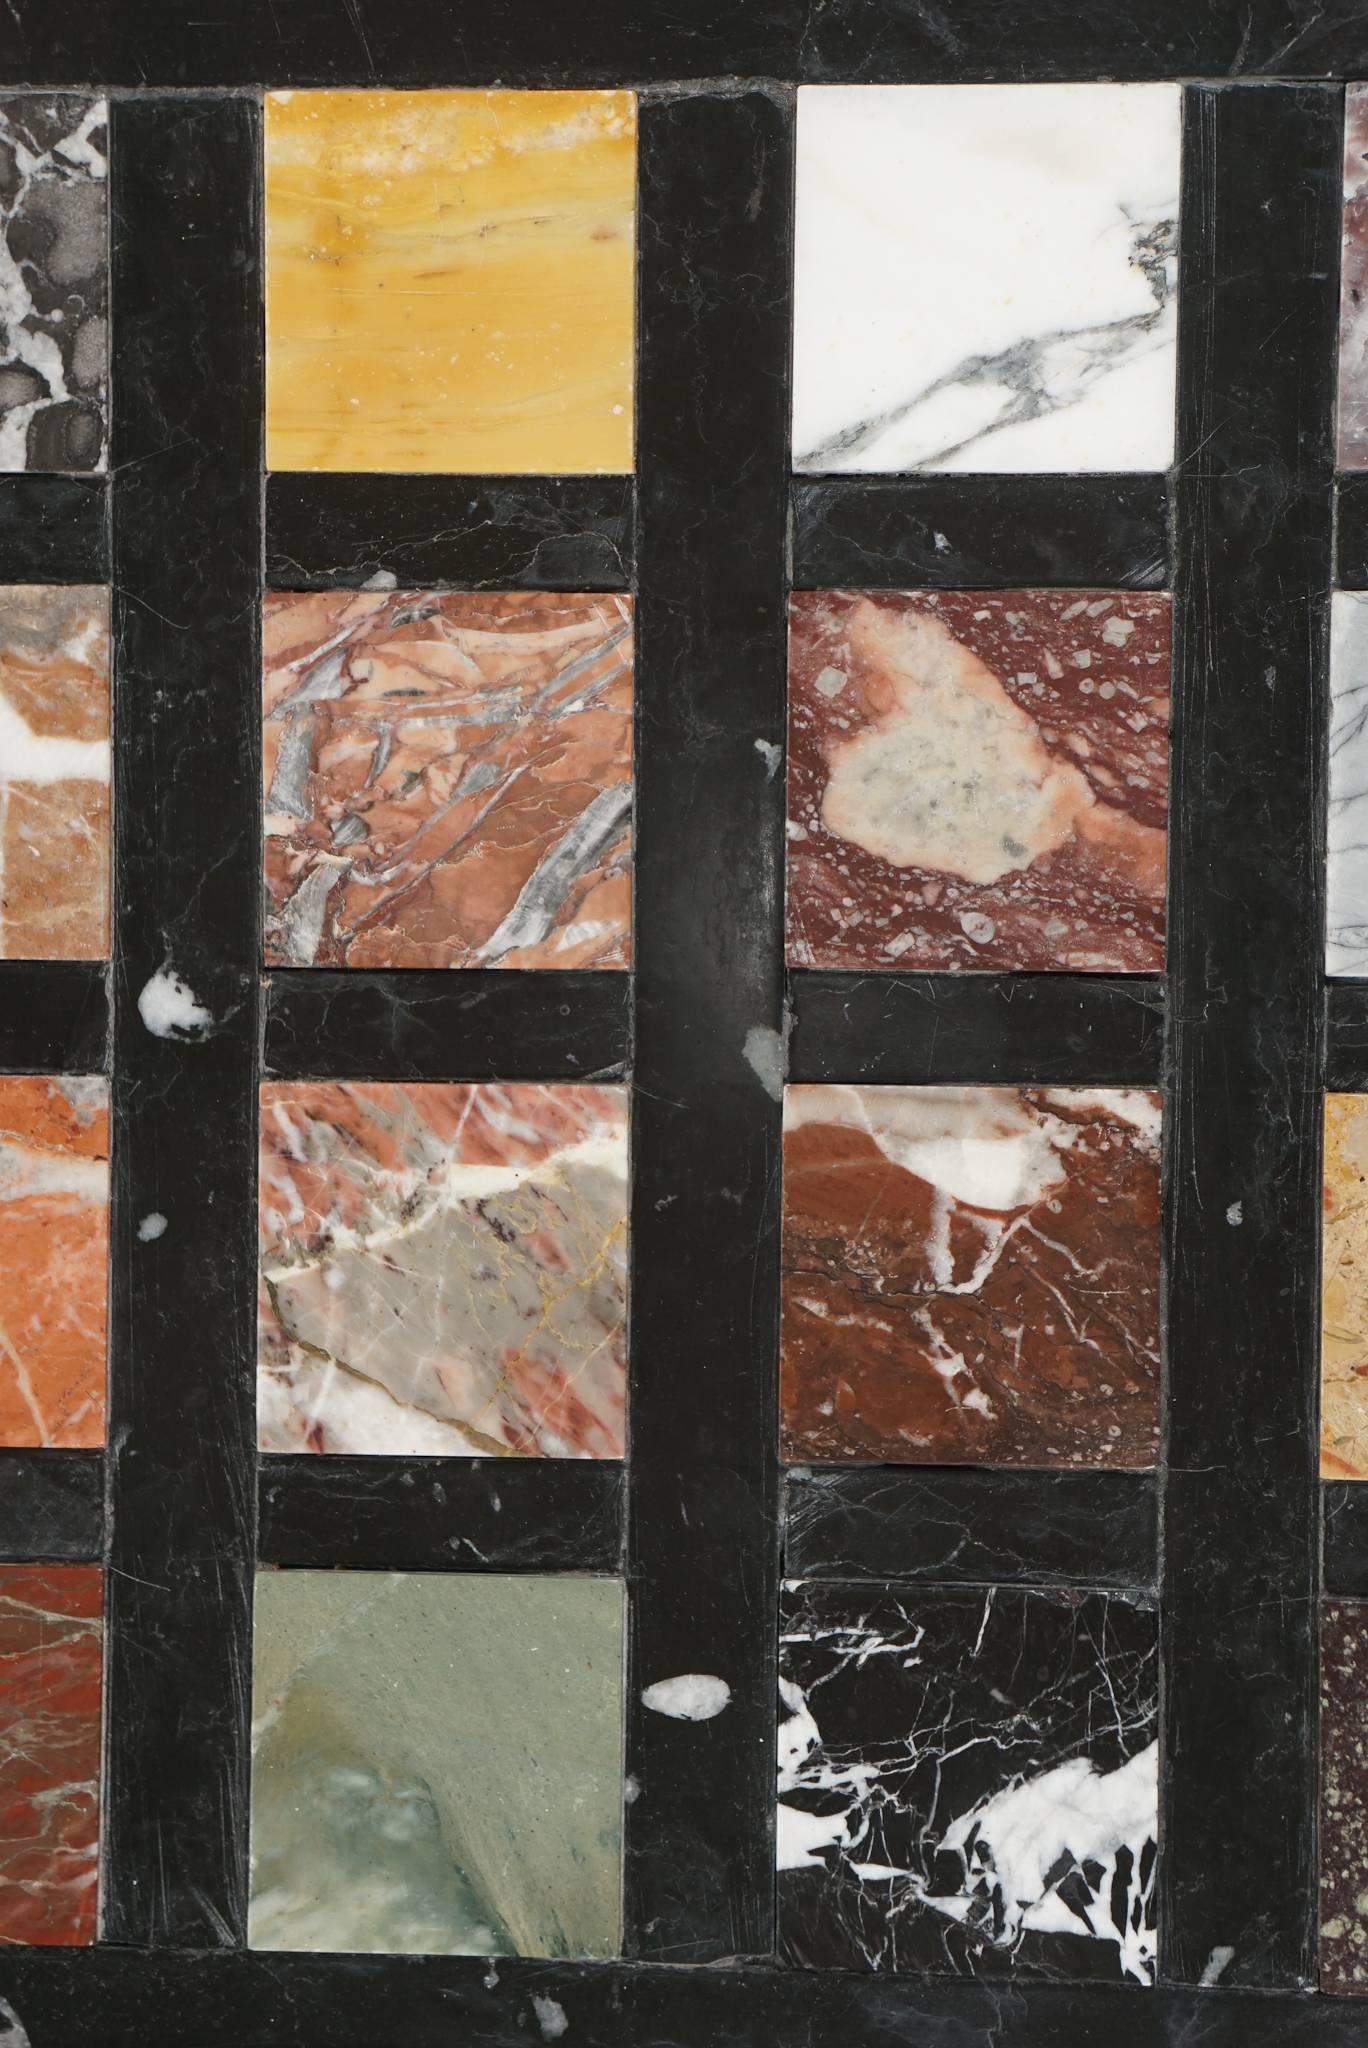 Italienische Grand Tour Marmortafel in einem originalen Rahmen aus vergoldetem Silberholz, bestehend aus 20 verschiedenen seltenen und antiken Marmorsorten, darunter Porphyr und Jaspis, eingelegt in ein geometrisches Gitter aus schwarzem und weißem